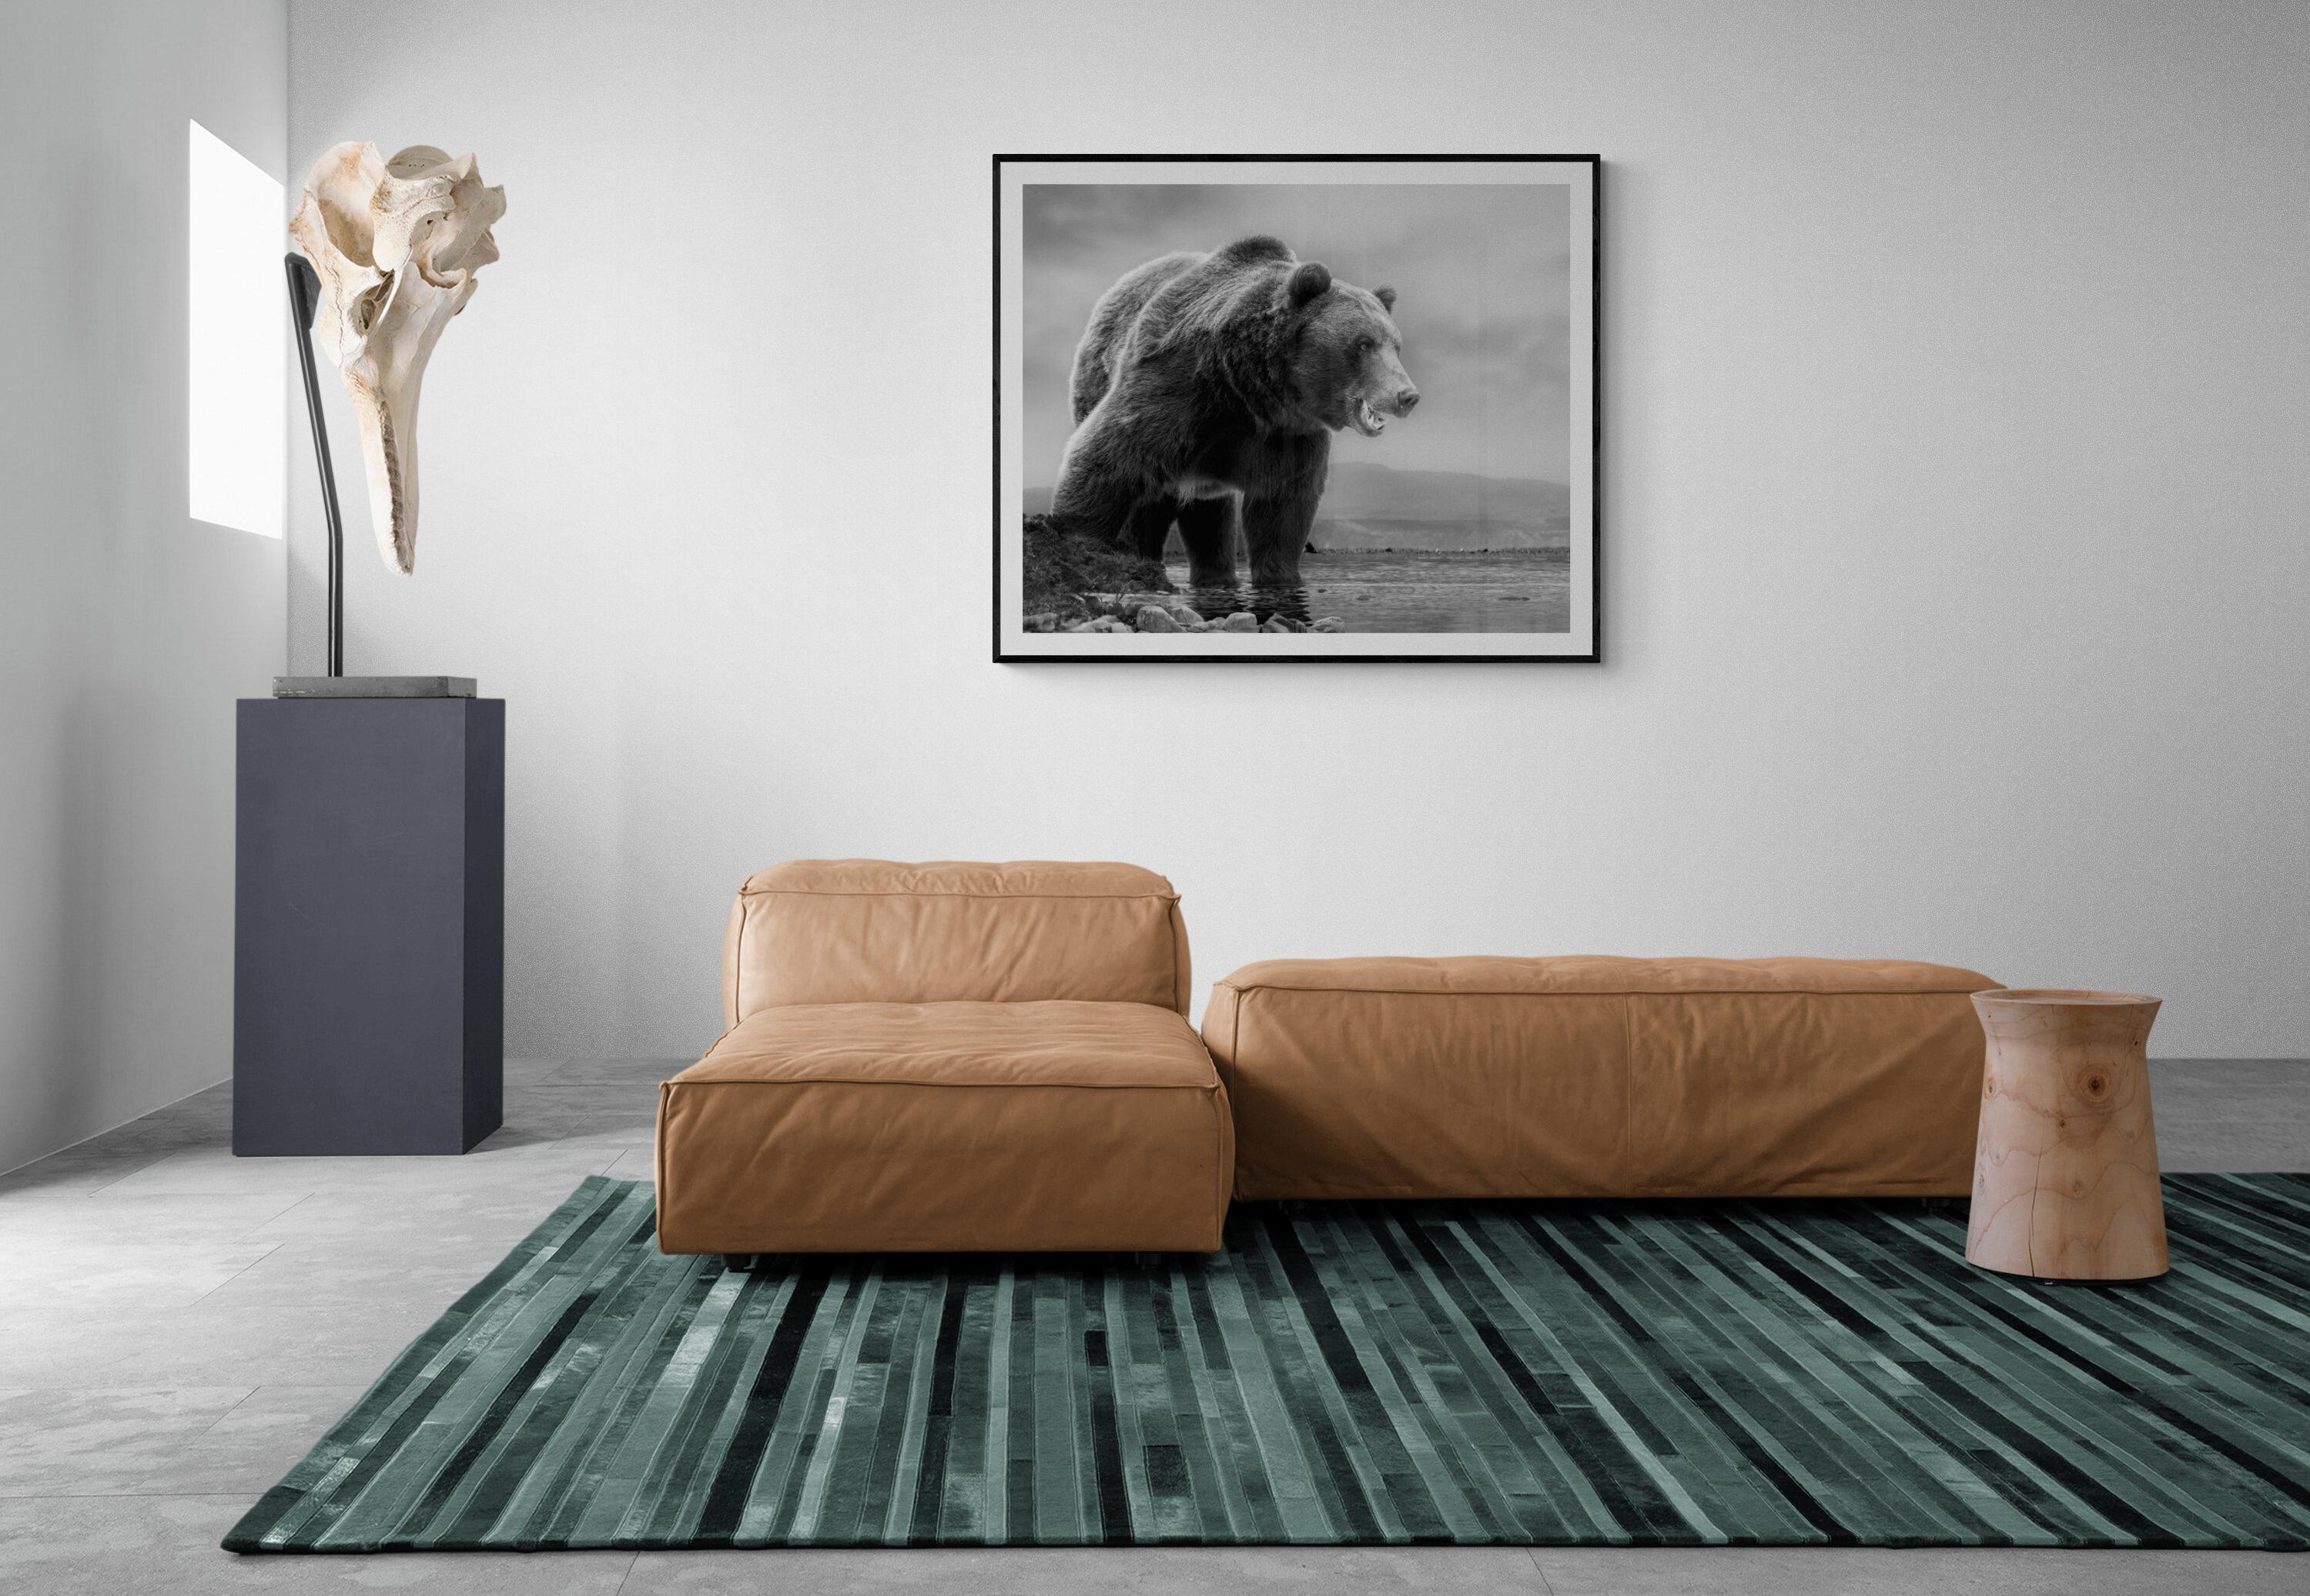 Il s'agit d'une photographie contemporaine d'un ours Kodiak.  
Ceci a été tourné sur l'île de Kodiak en 2019. 
36x48 Edition de 12
Chantée et numérotée
Papier pigmentaire d'archivage
Encadrement disponible. Renseignez-vous sur les tarifs. 


Shane